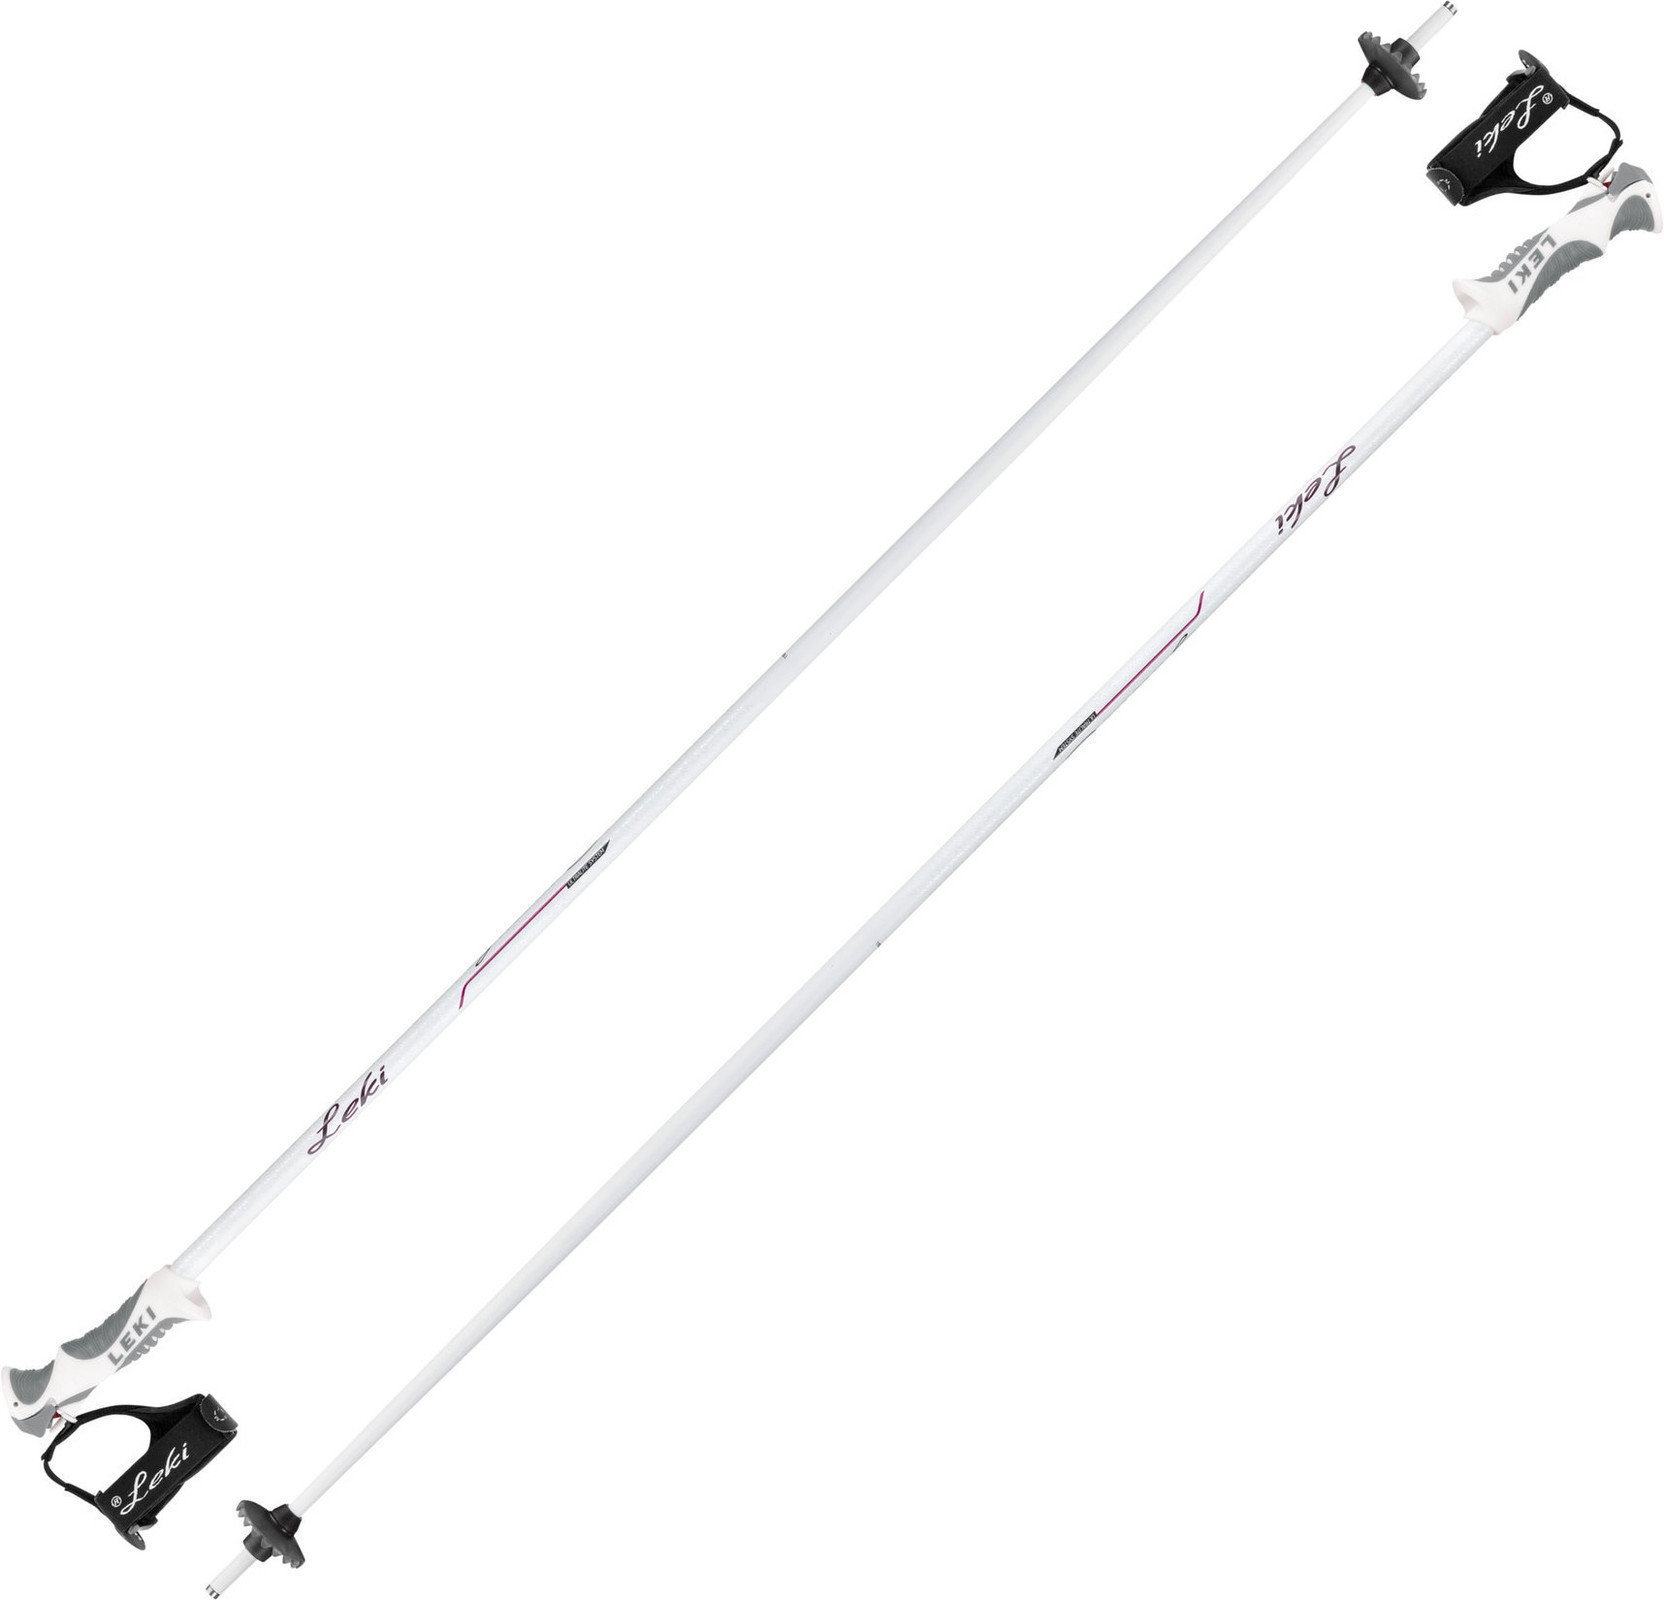 Ski Poles Leki Giulia S White/Anthracite/Berry 120 cm Ski Poles